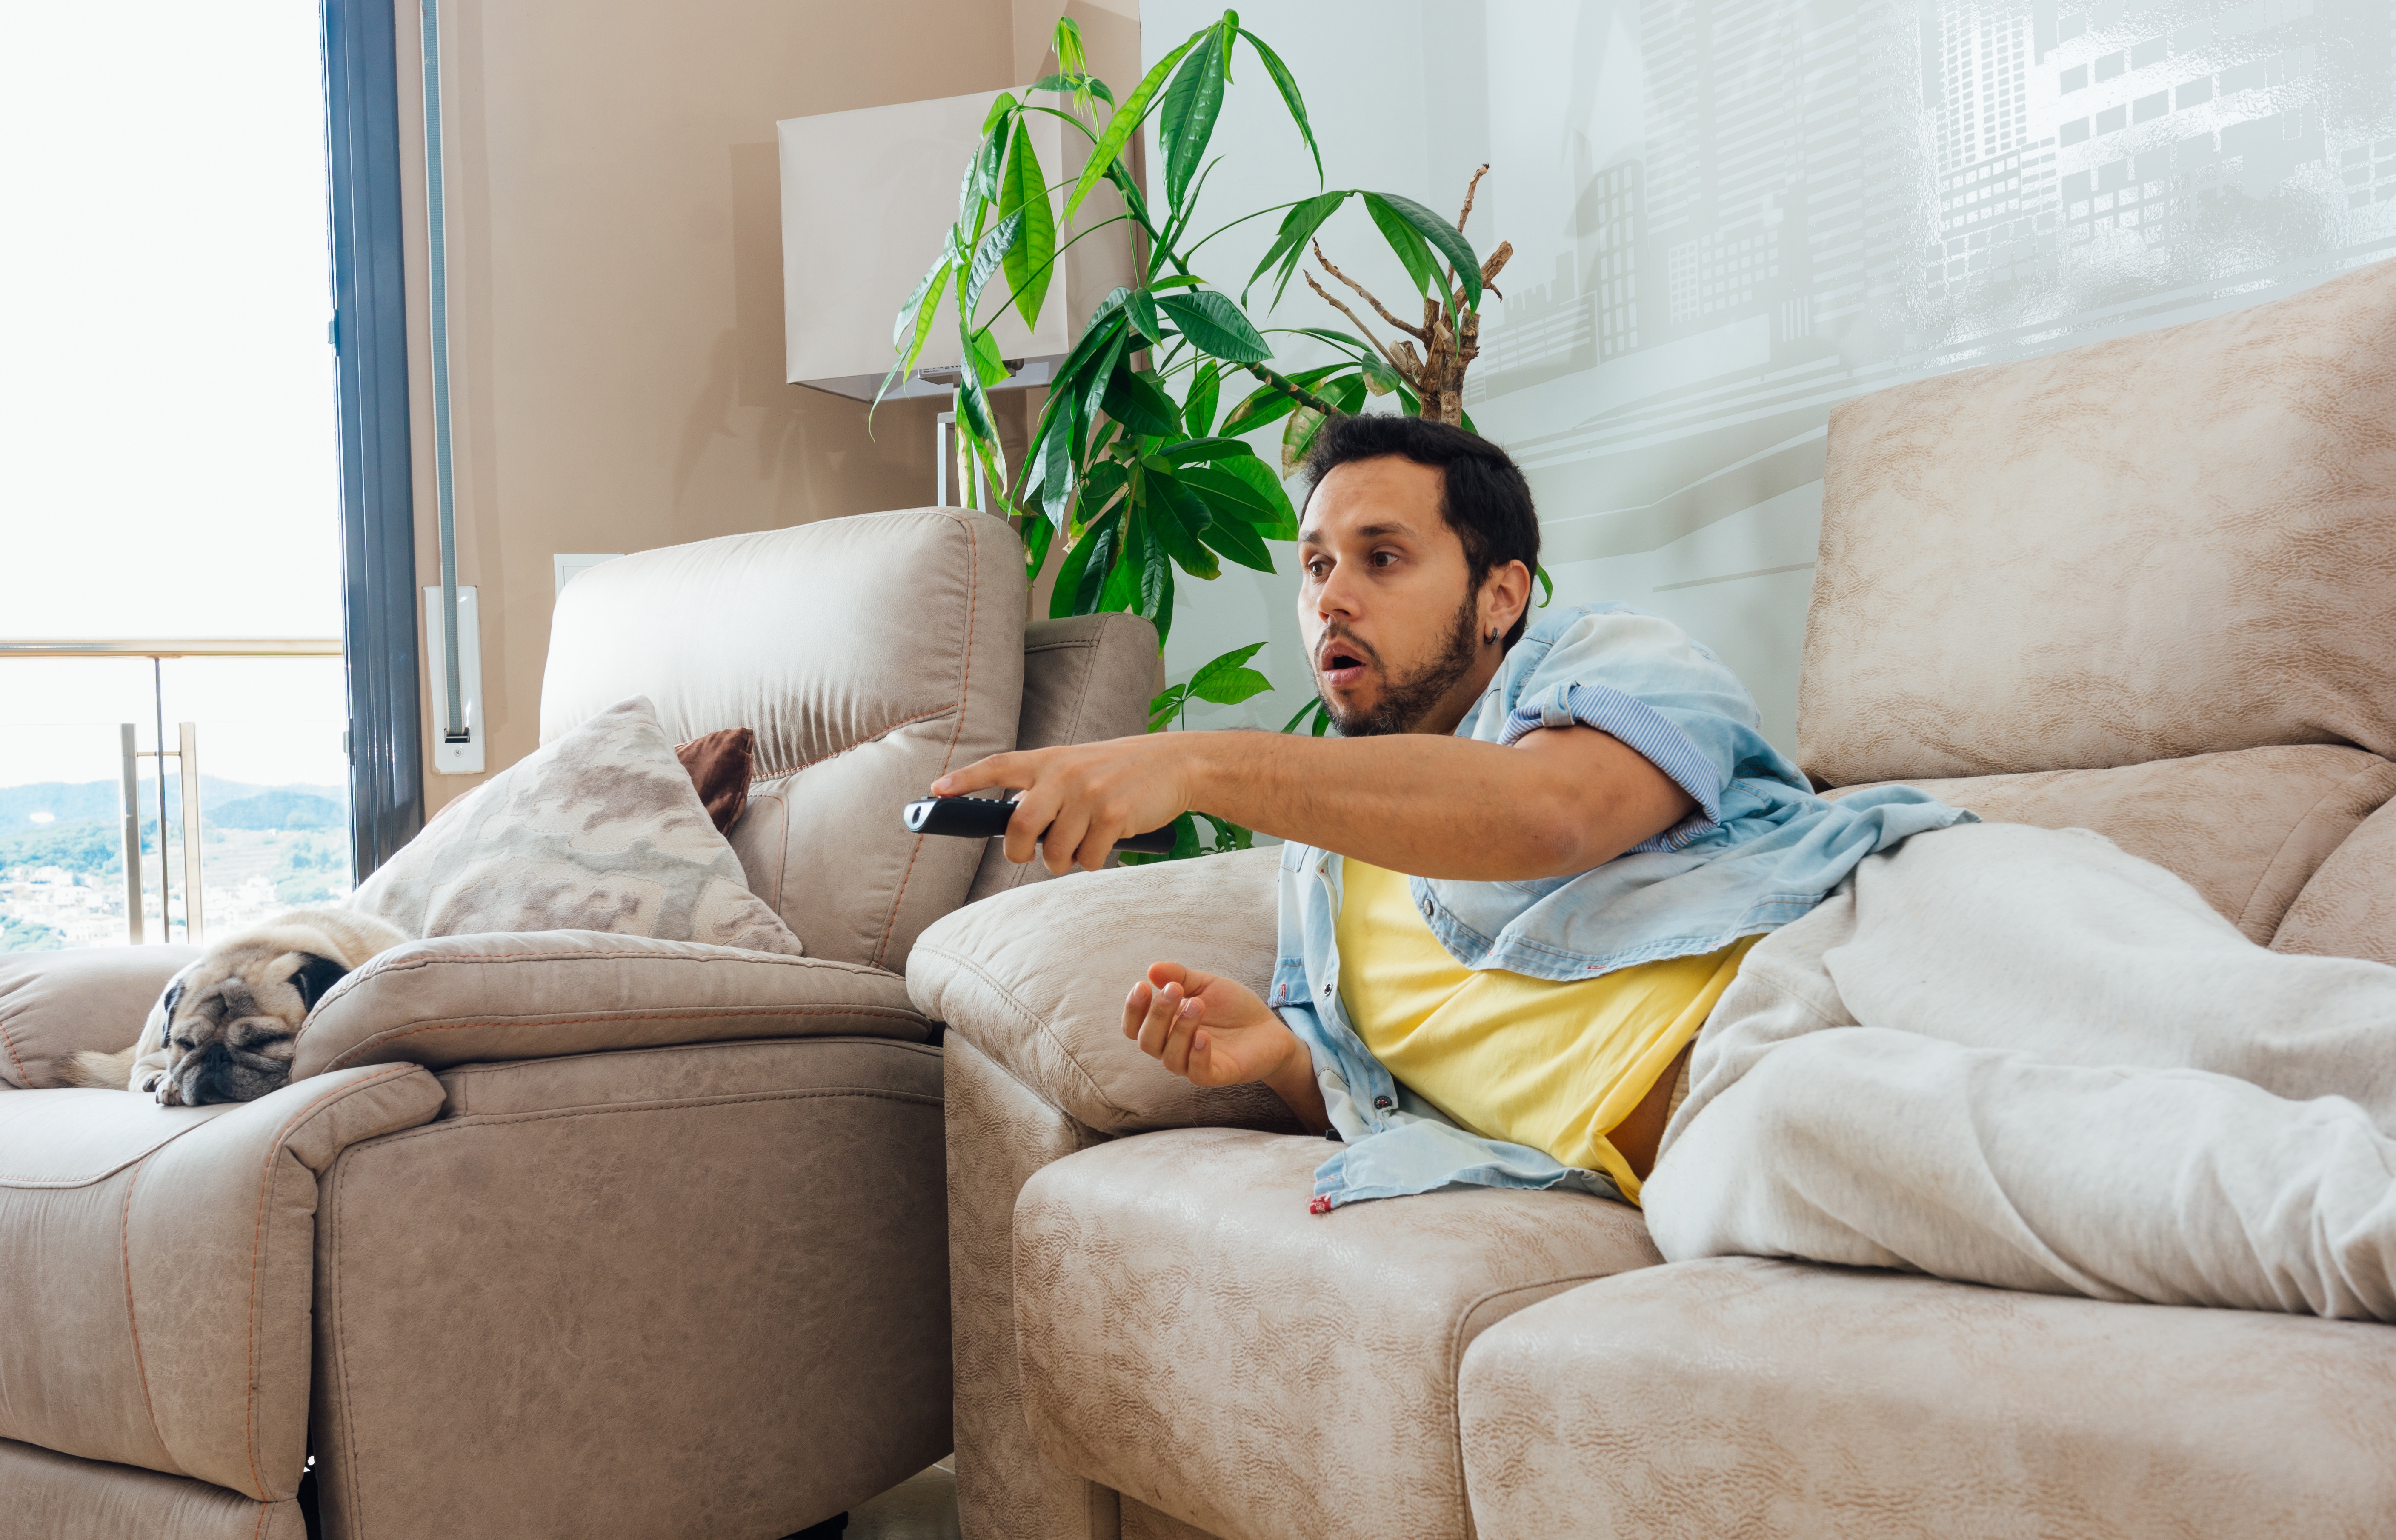 Mann auf einer Couch mit der TV-Fernbedienung | Quelle: wirestock auf Freepik